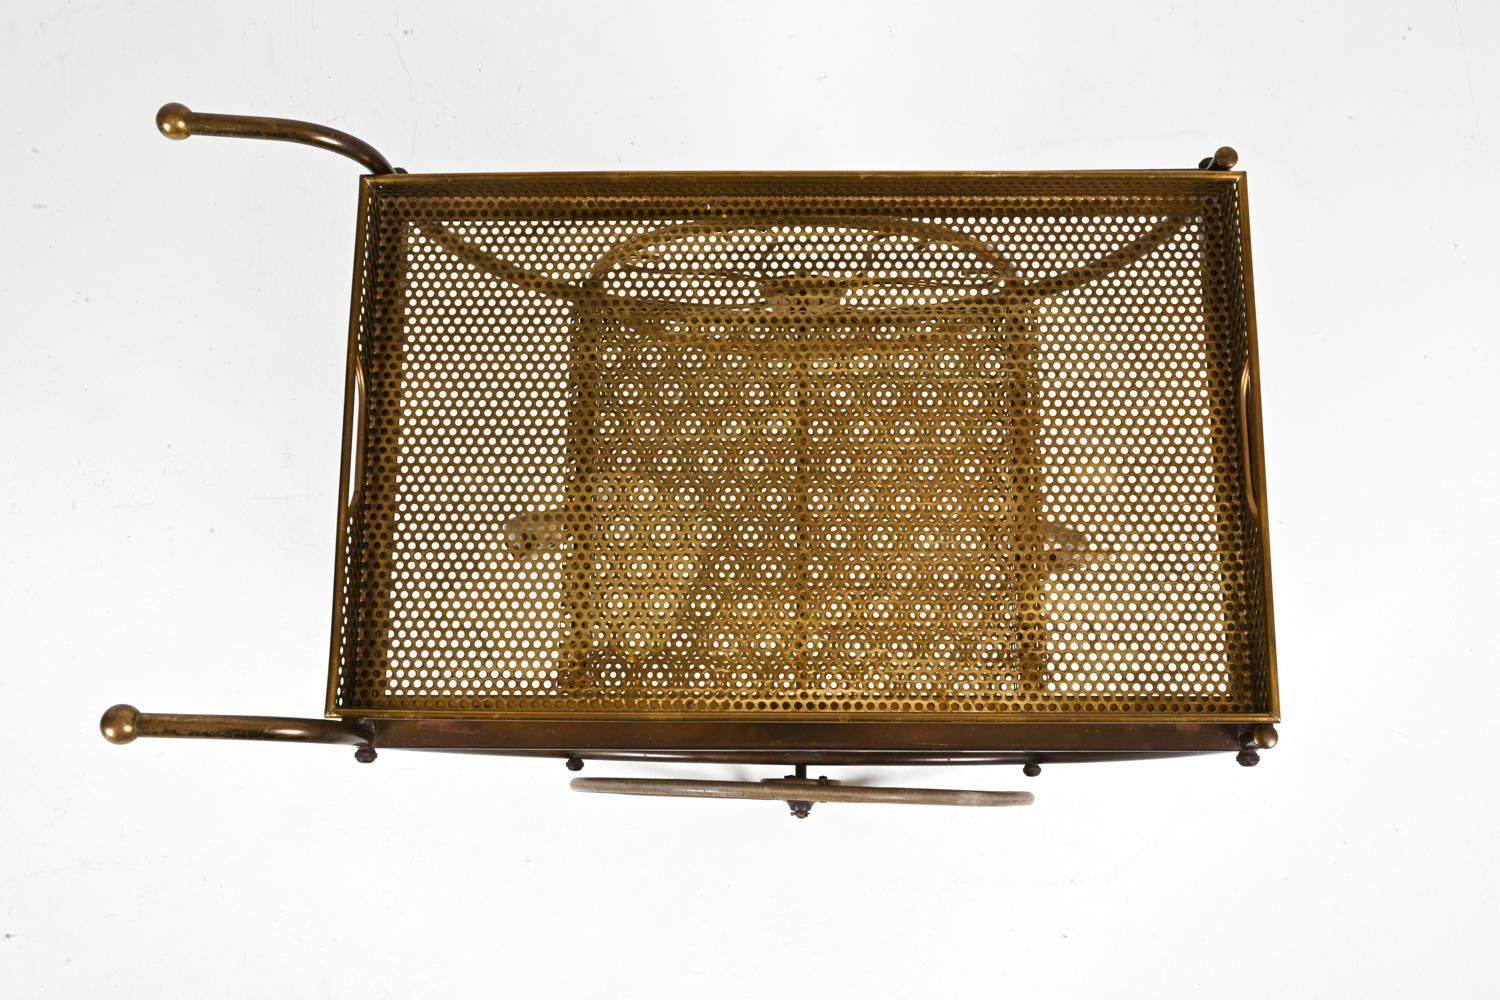 20th Century Brass Bar Cart by Josef Frank for Svenskt Tenn, c. 1950's For Sale